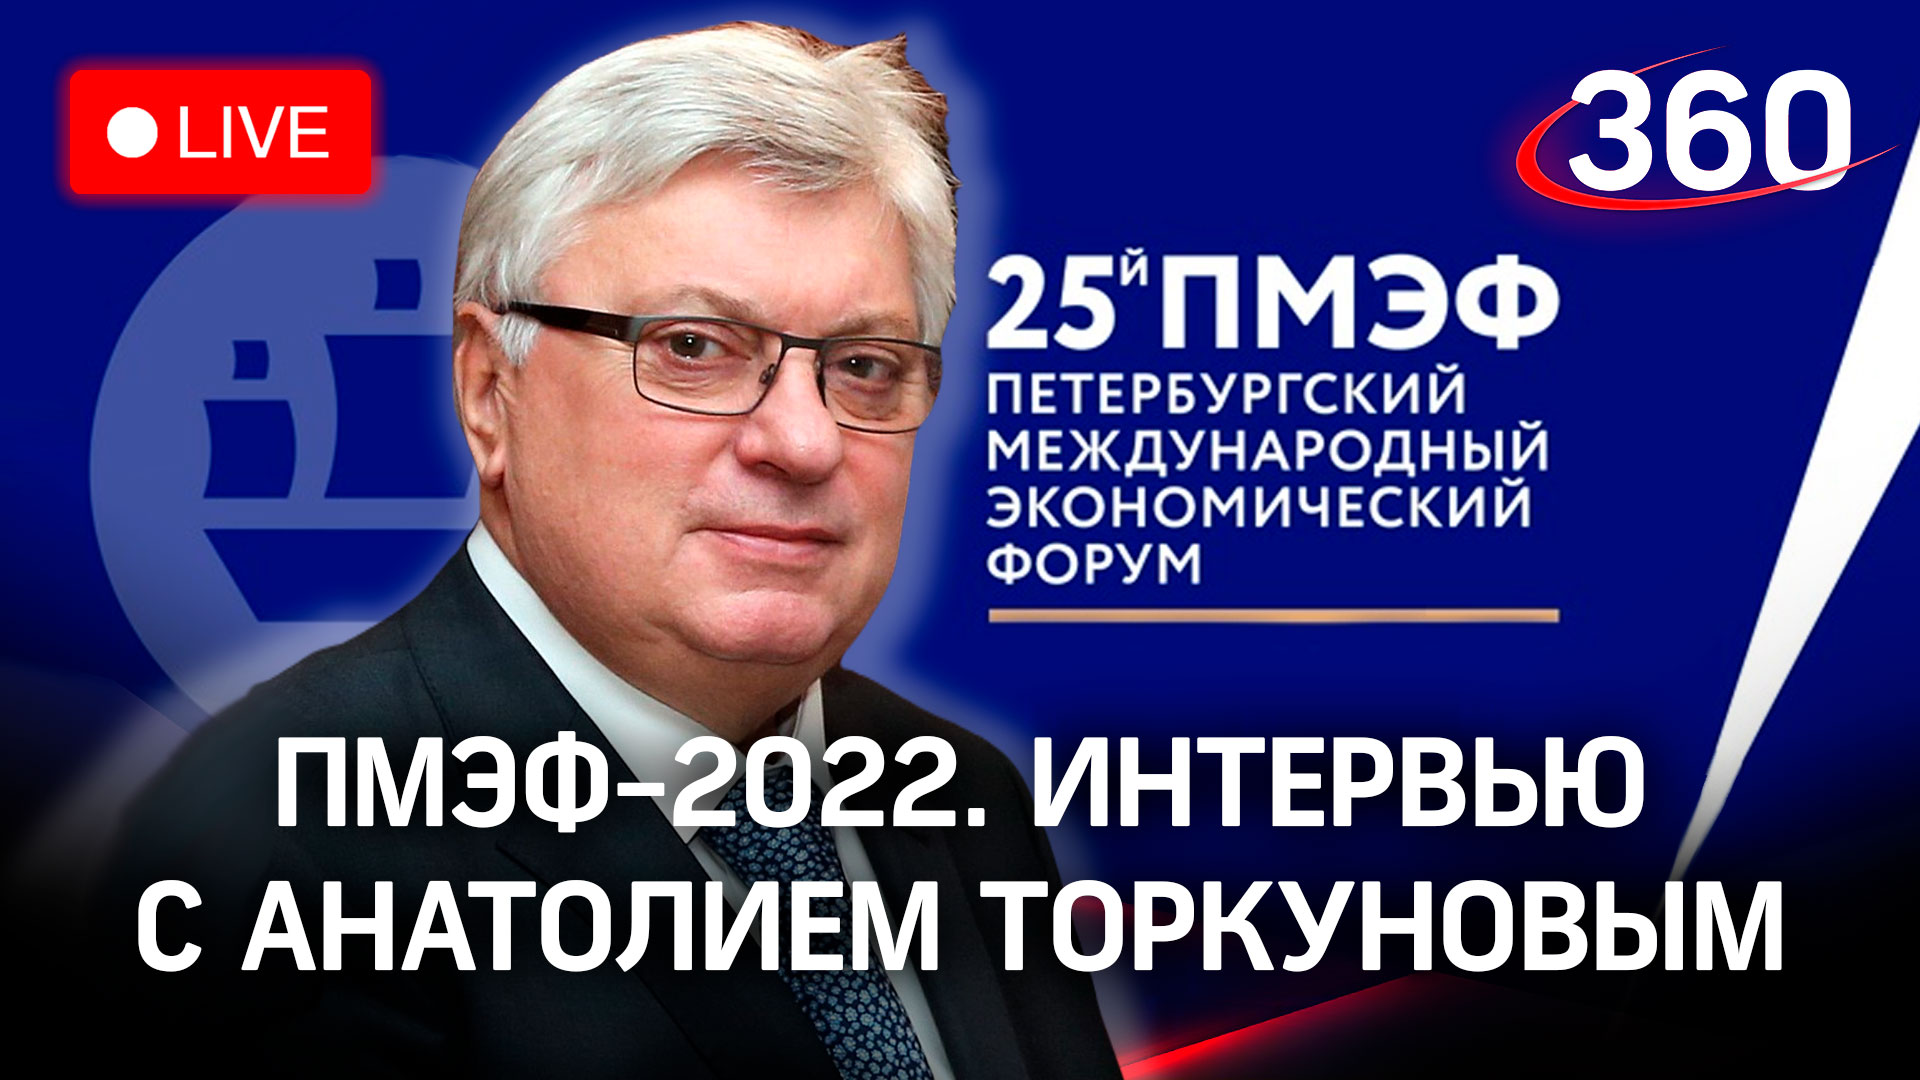 ПМЭФ-2022: интервью с Анатолием Торкуновым, ректором МГИМО